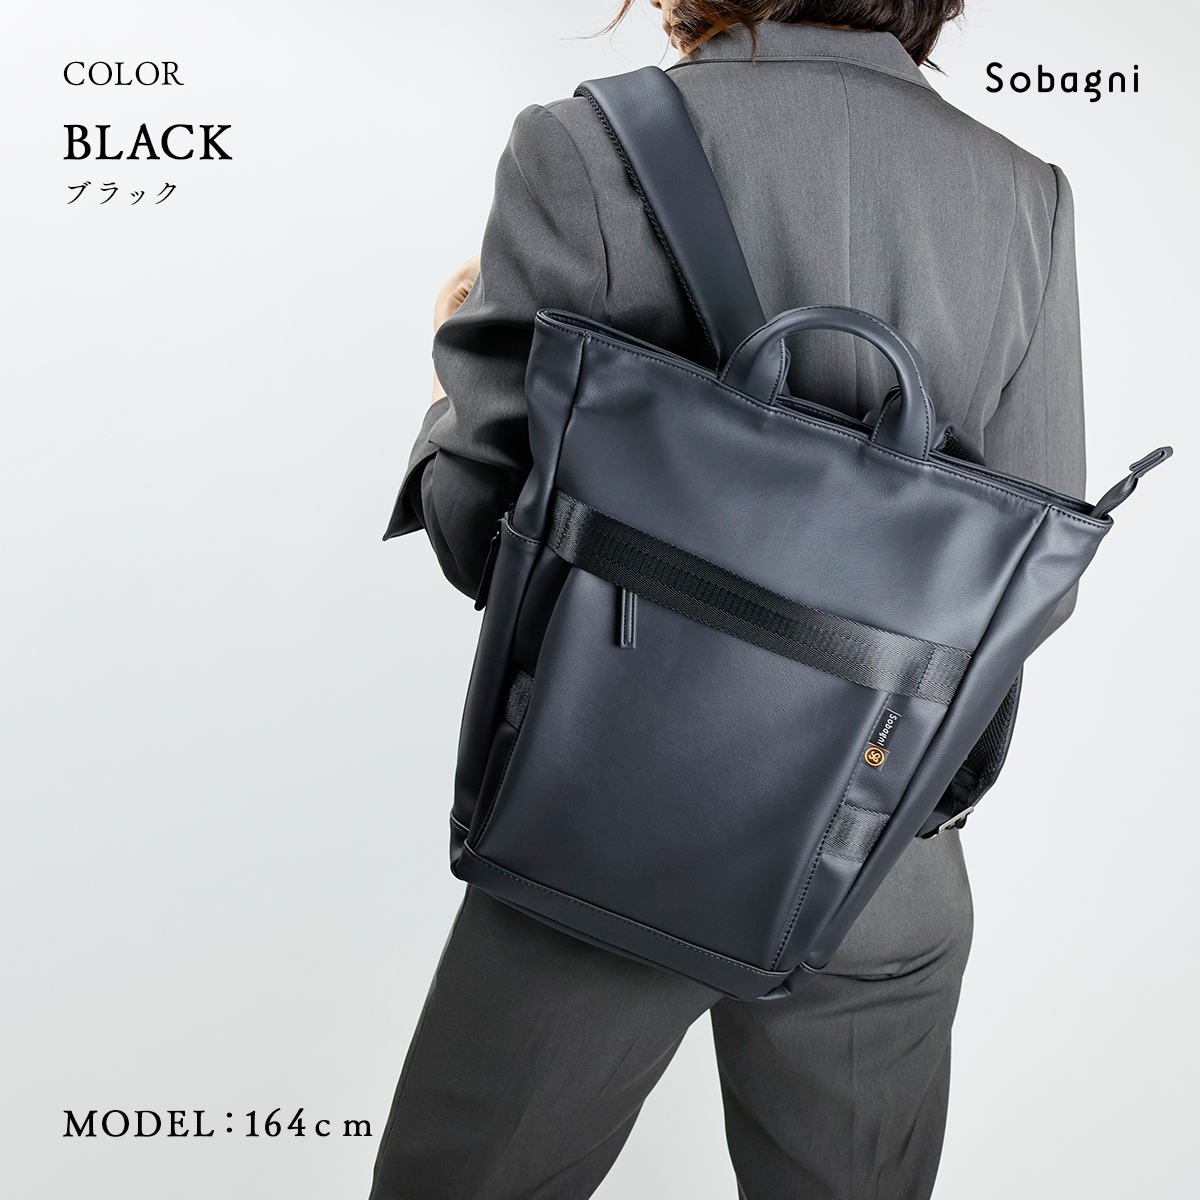 ソバニ公式 バックパック HANACO リュック マザーズバッグ ビジネスバッグ